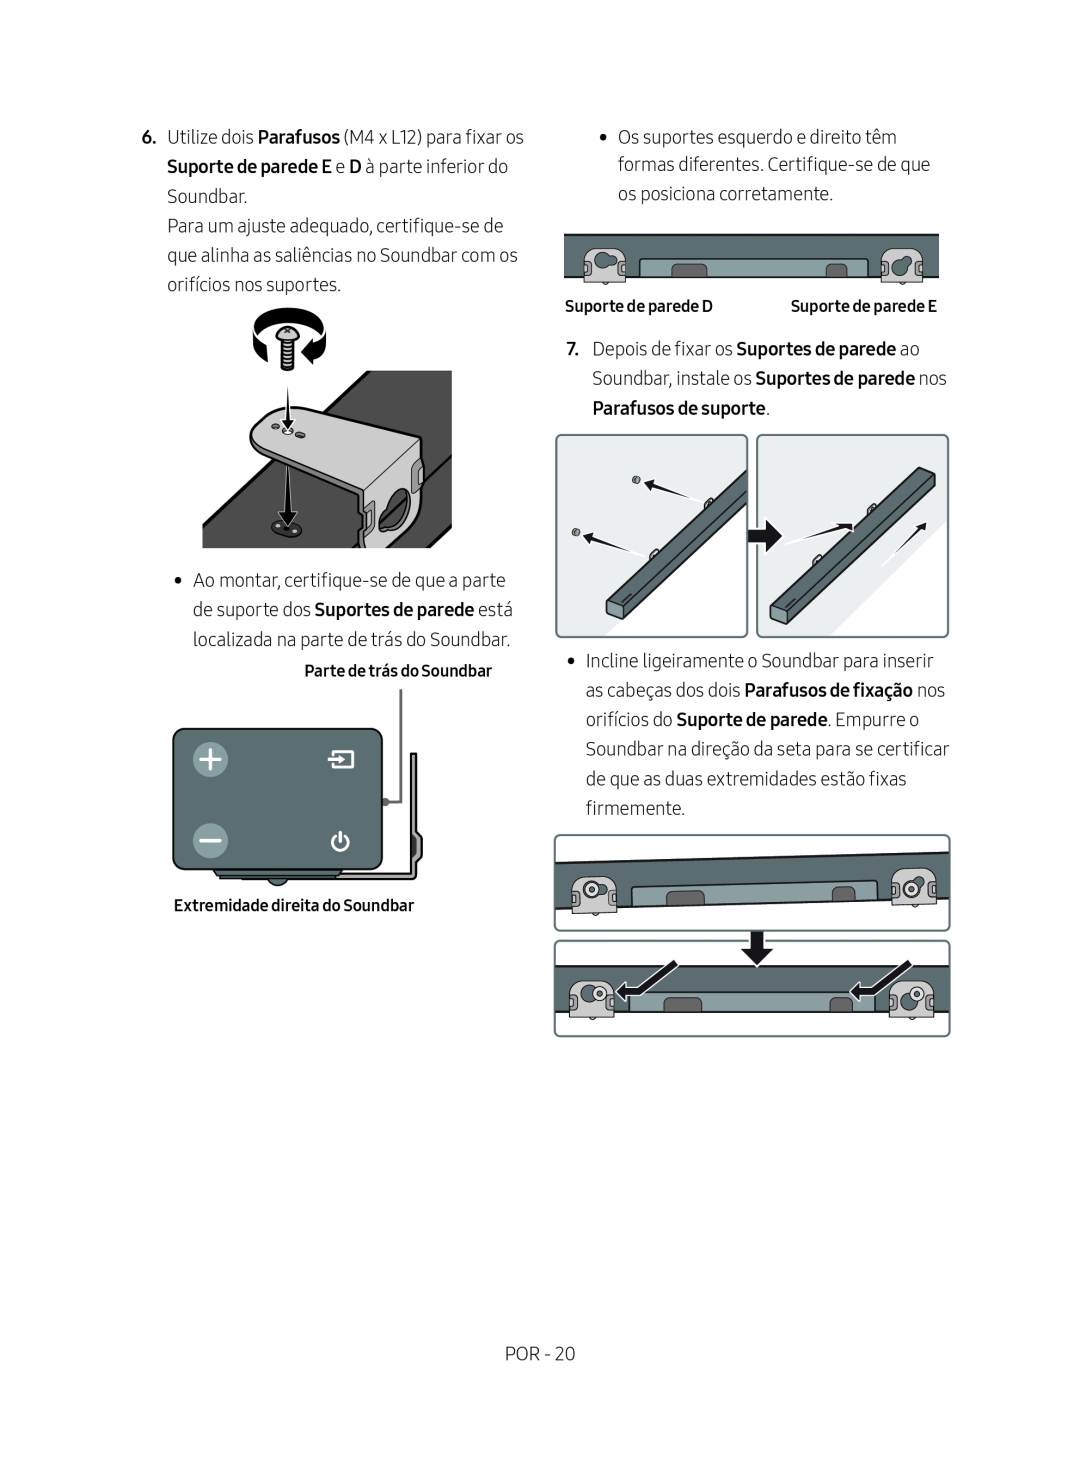 Samsung HW-M450/EN Parafusos de suporte, Parte de trás do Soundbar Extremidade direita do Soundbar, Suporte de parede D 